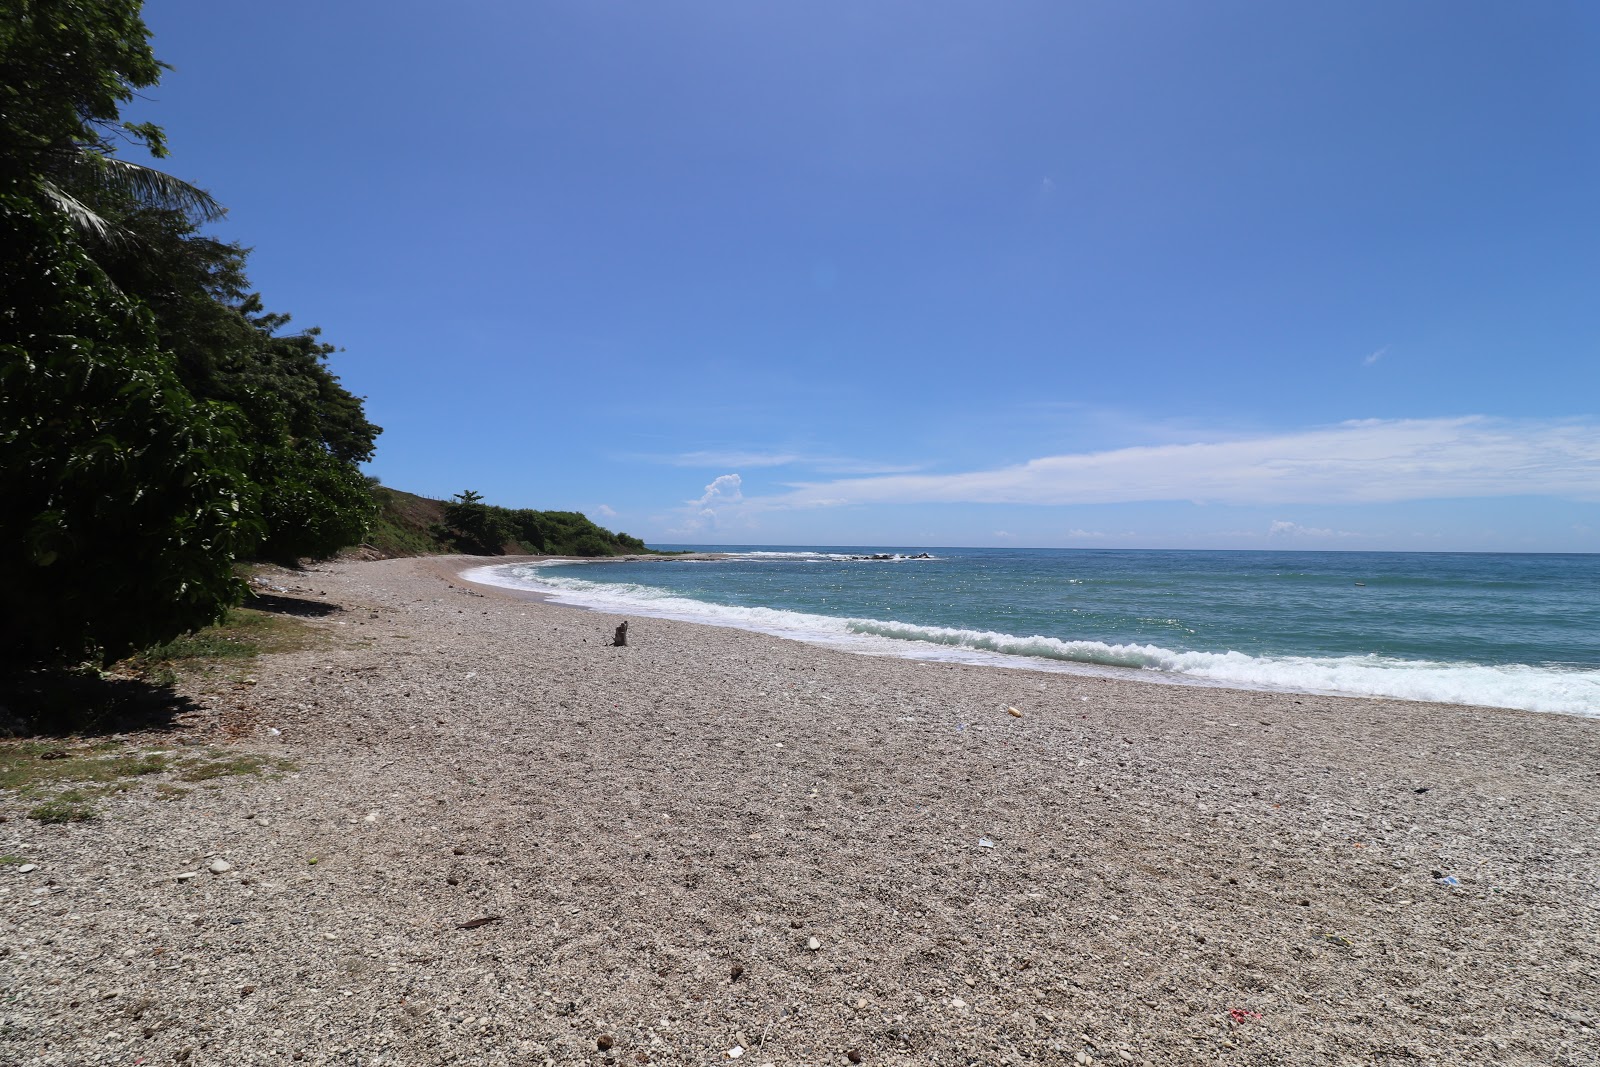 Valokuva Cienaga beachista. sisältäen pitkä suora